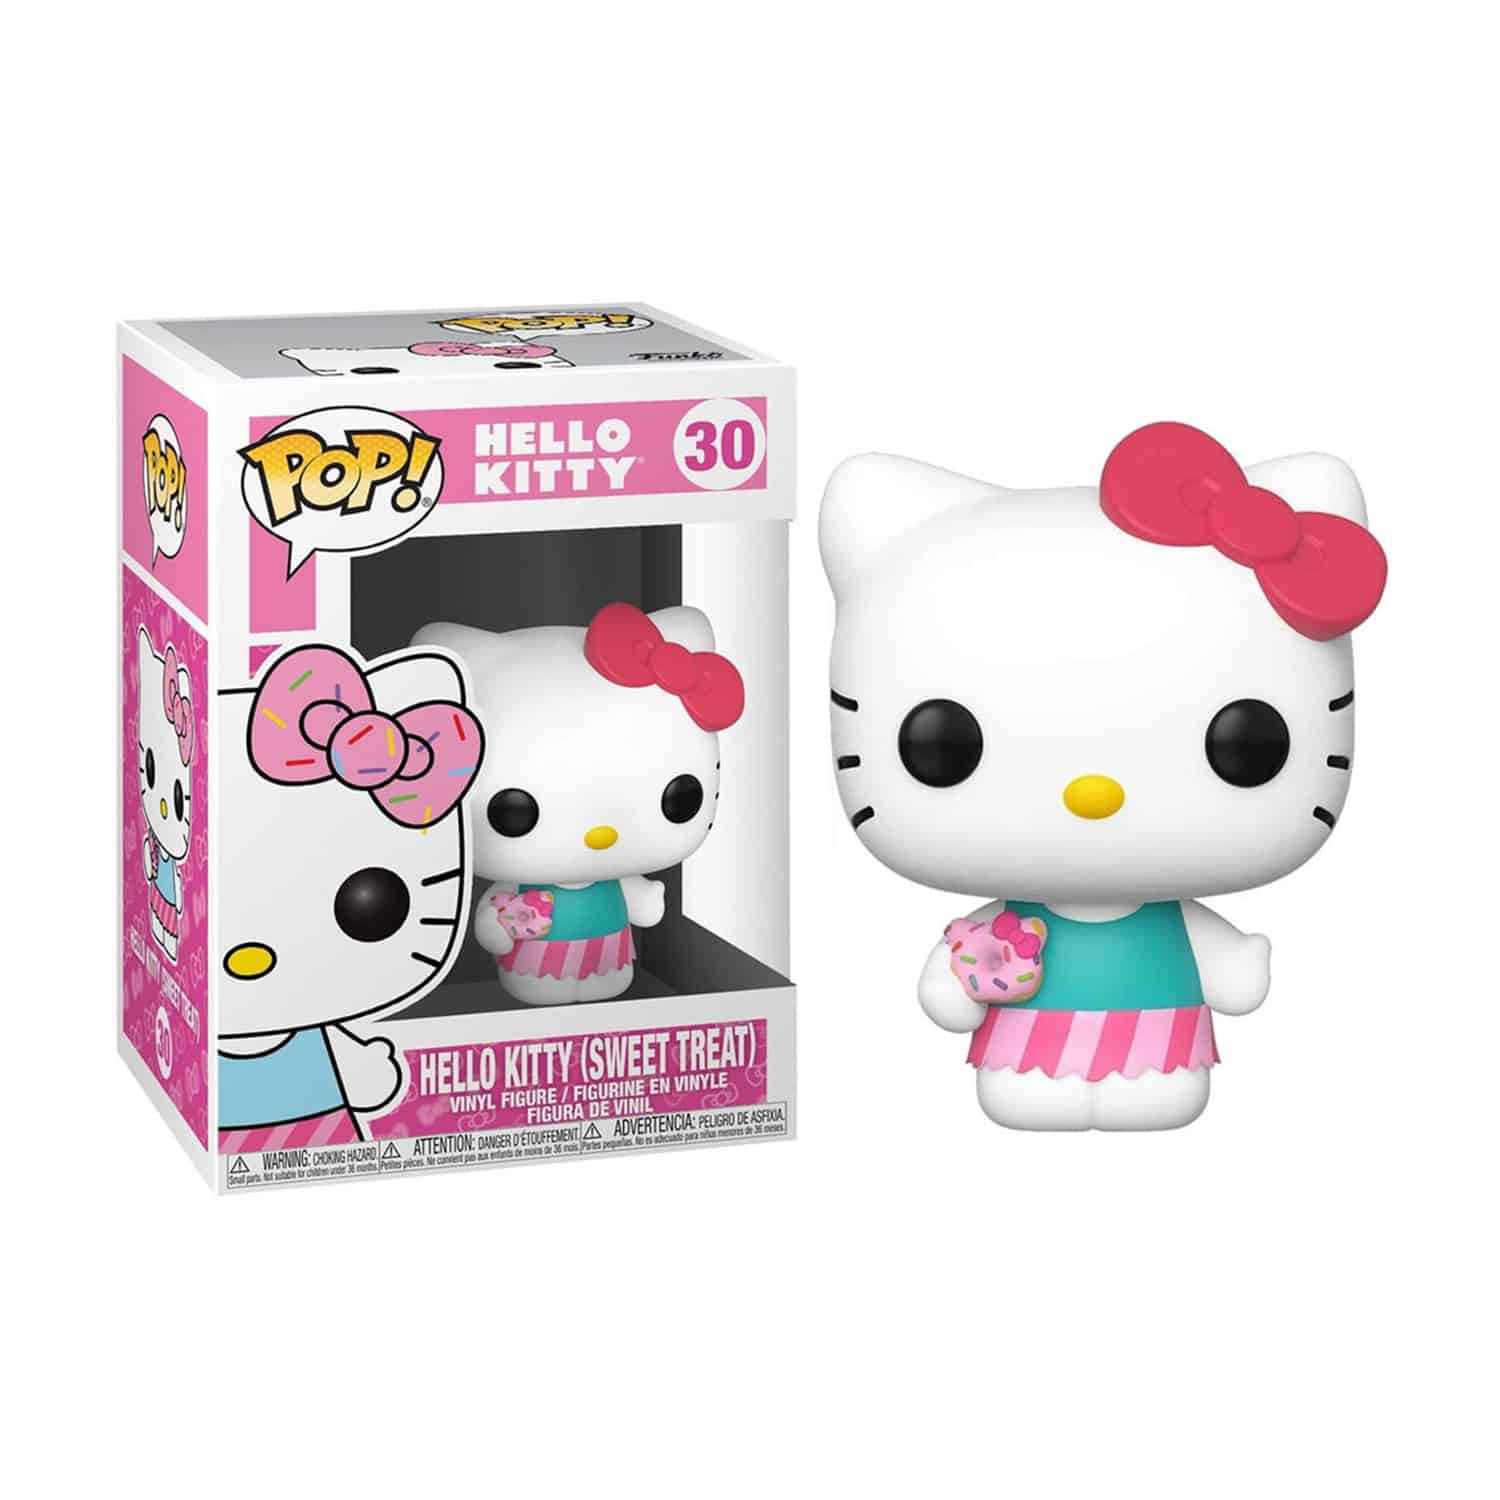 Hello Kitty - Hello Kitty (Sweat Treat) Funko Pop!